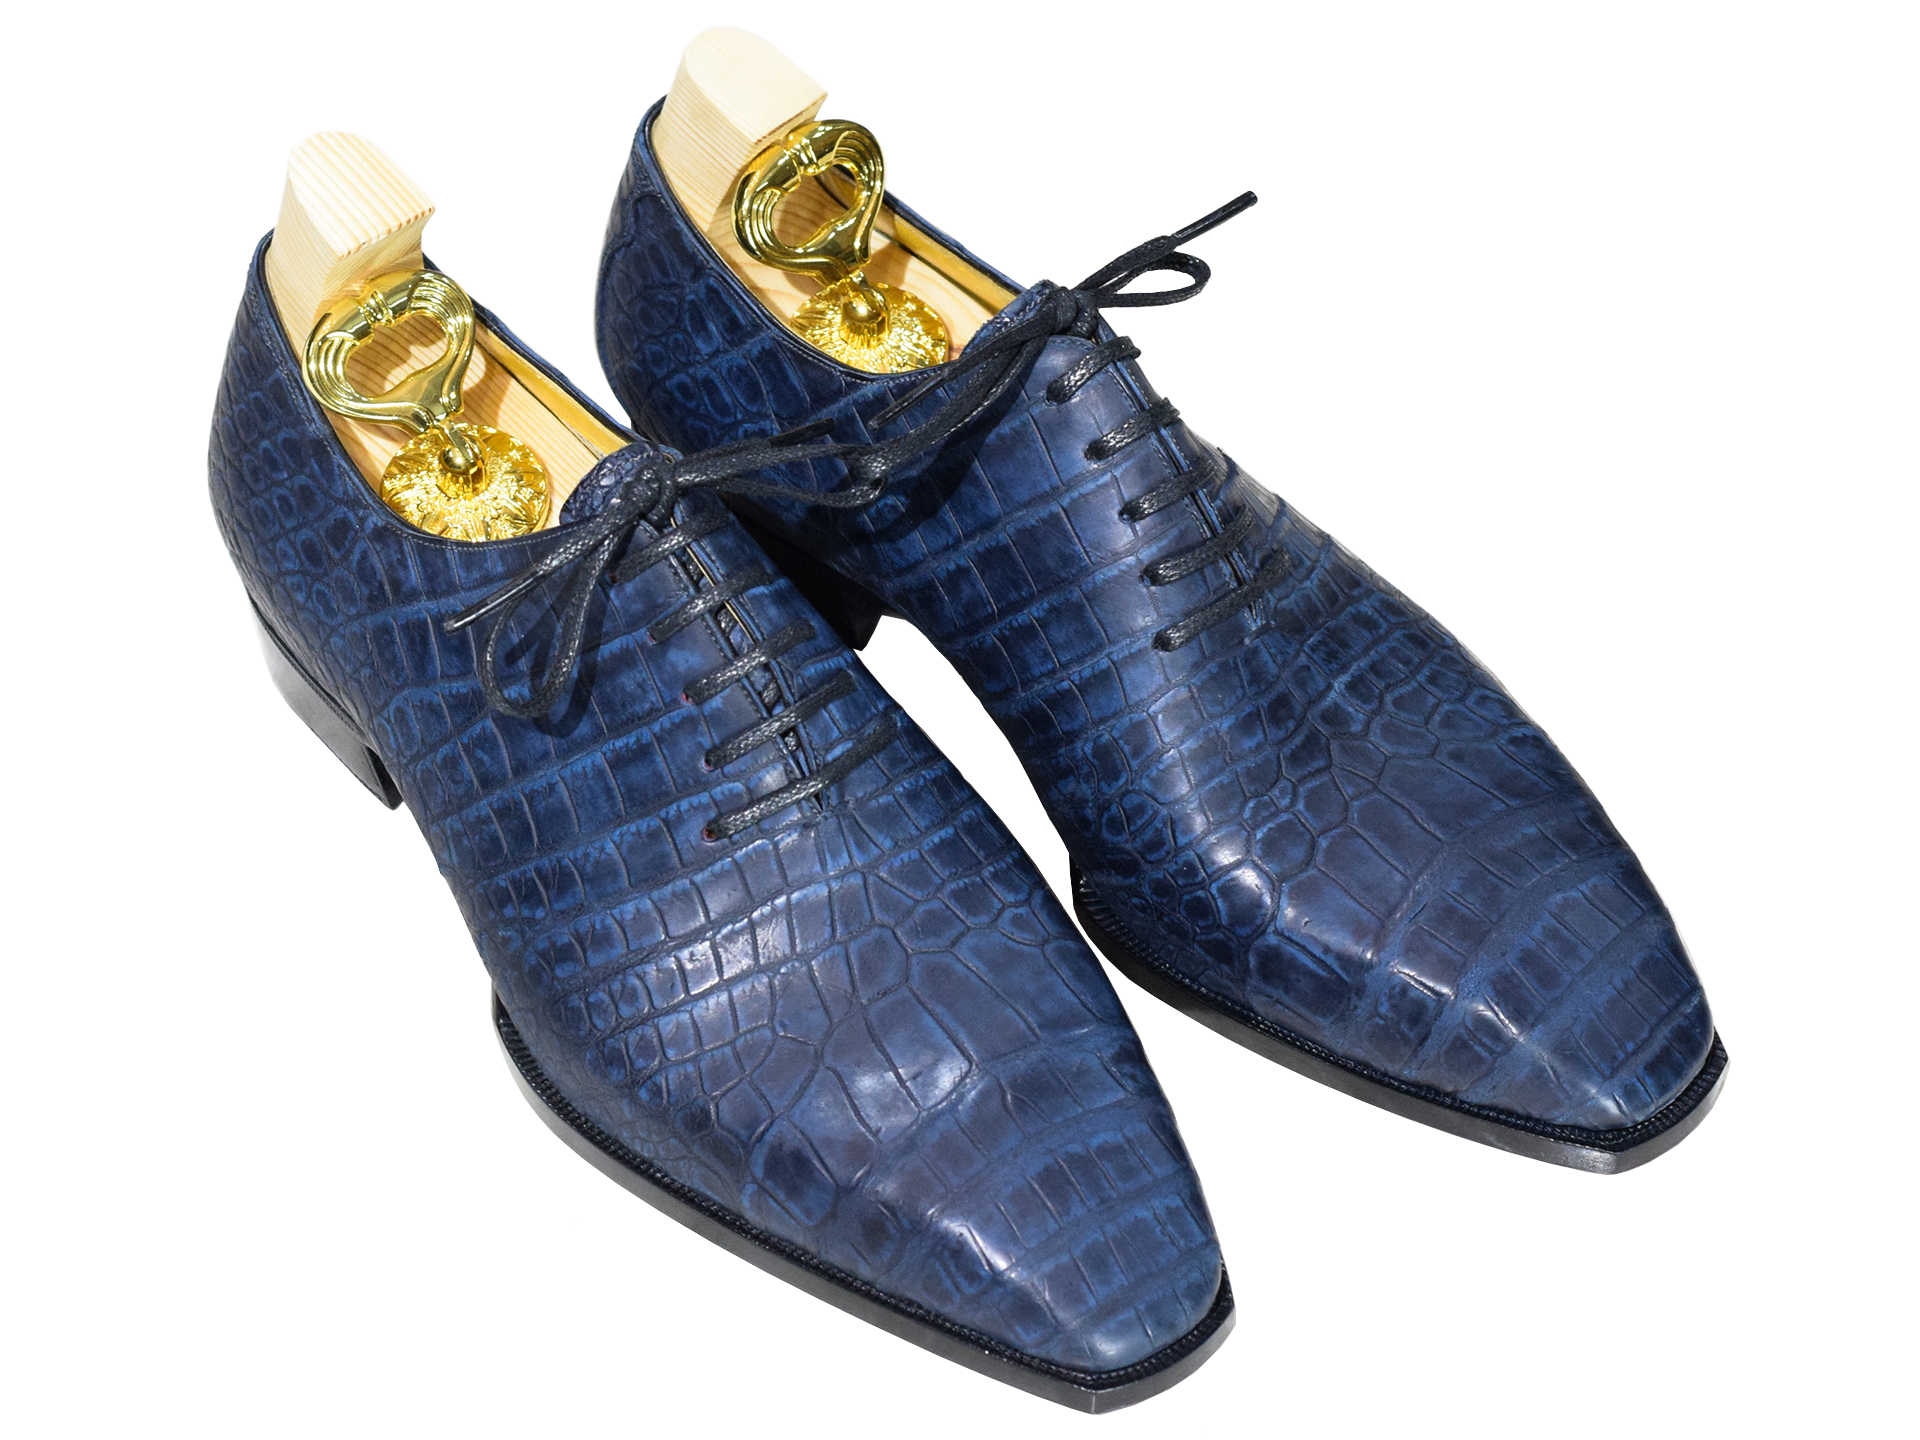 MTO Wholecuts Crocodile shoes - Premium line